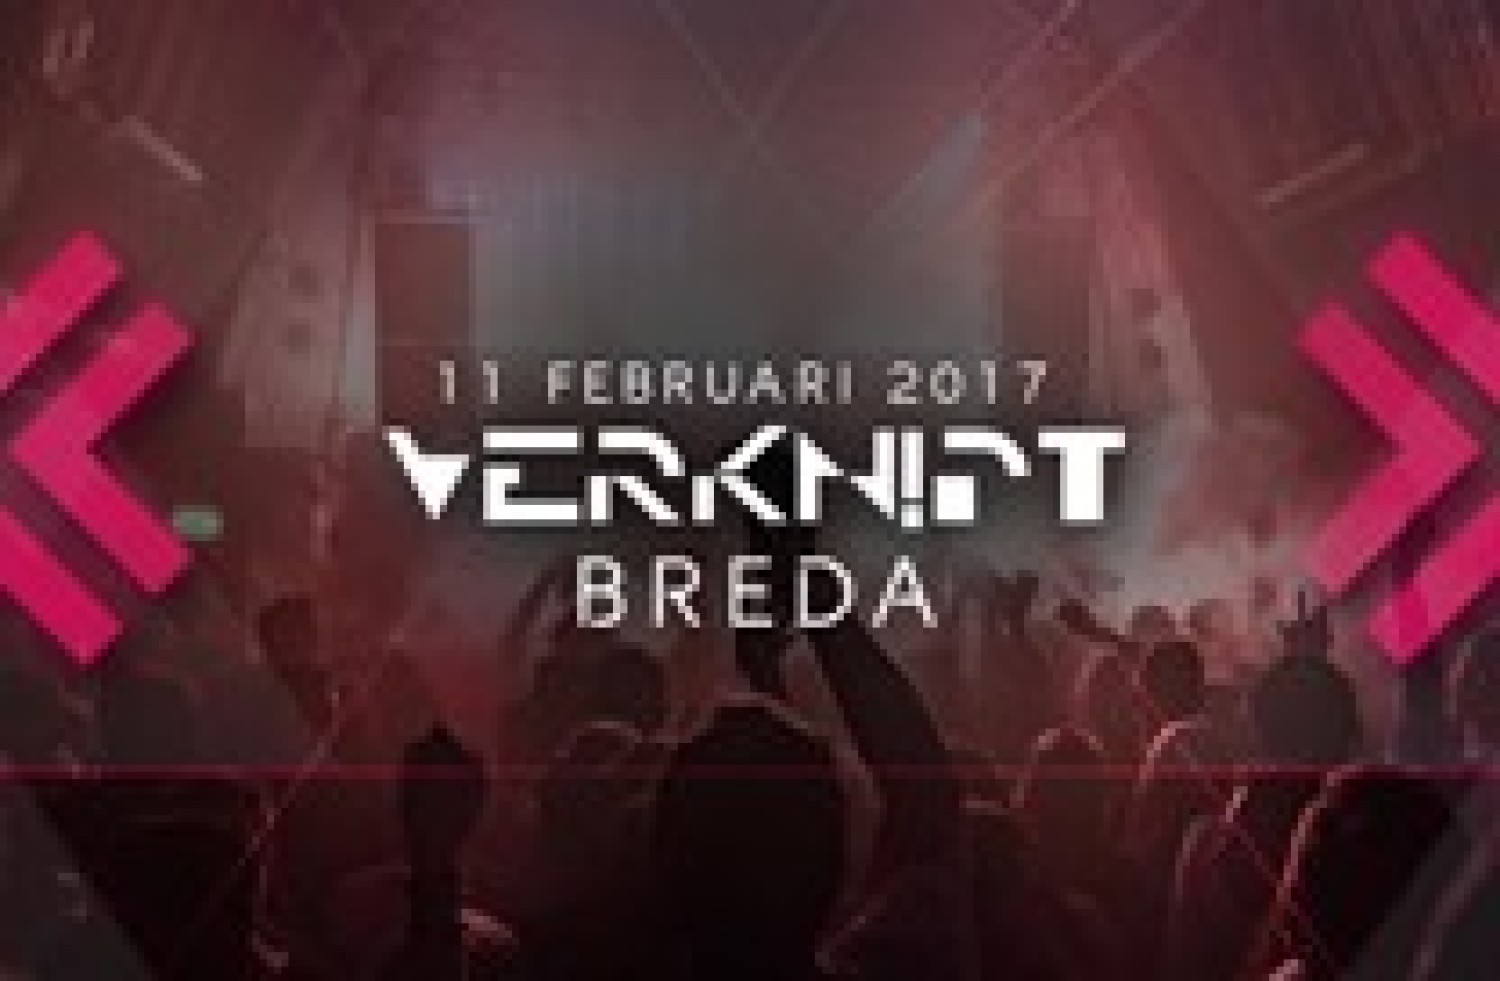 Party report: Verknipt Breda, Breda (11-02-2017)